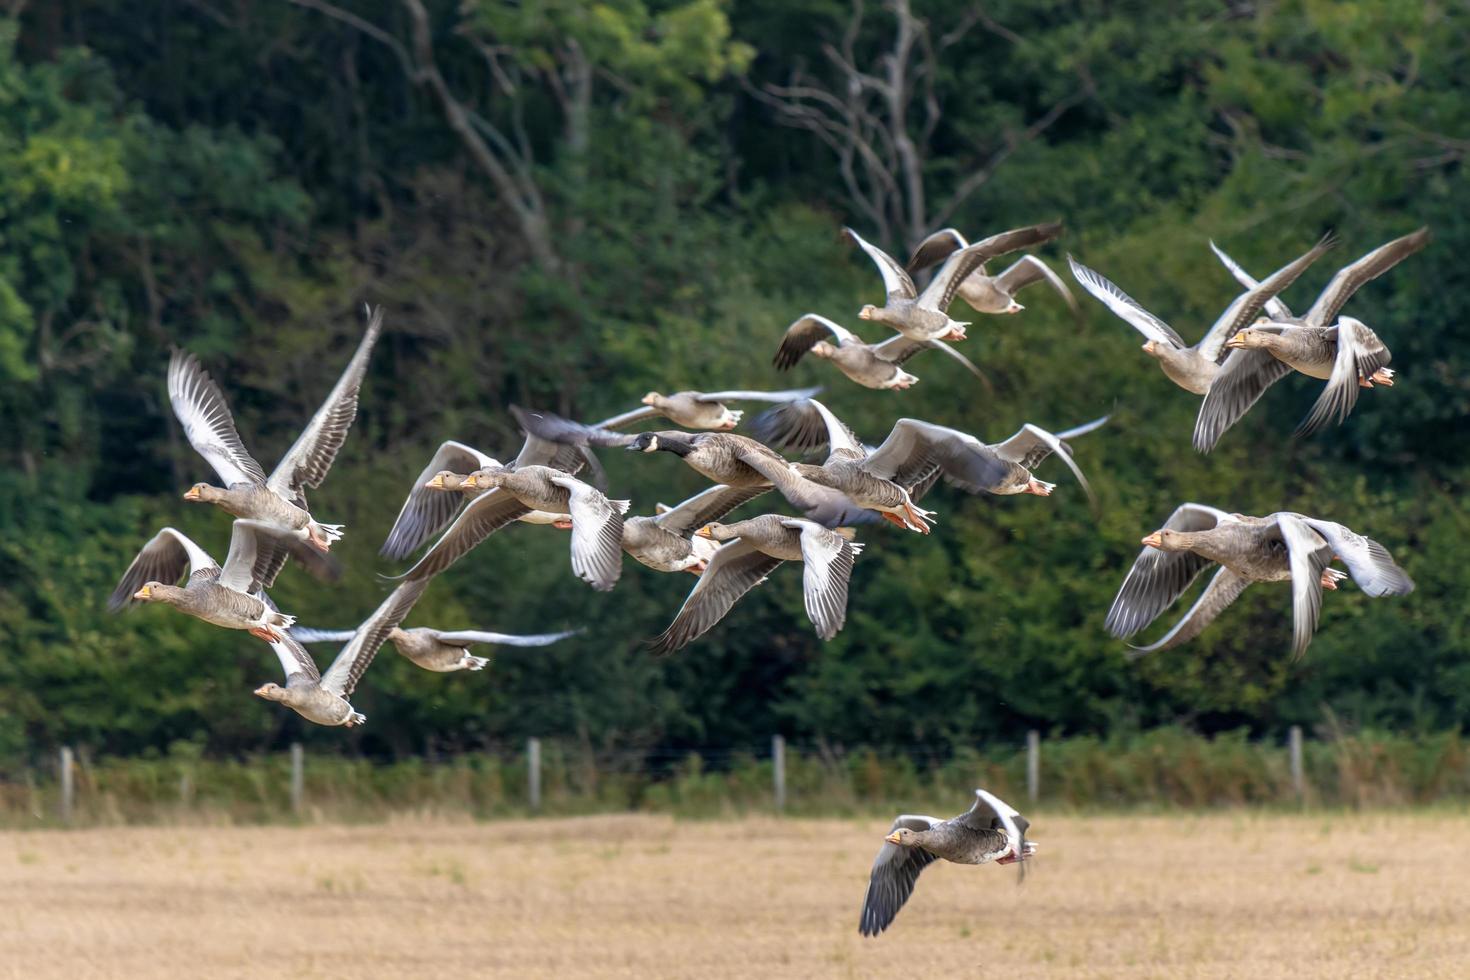 grauwe ganzen vliegen over een recent geoogst tarweveld foto